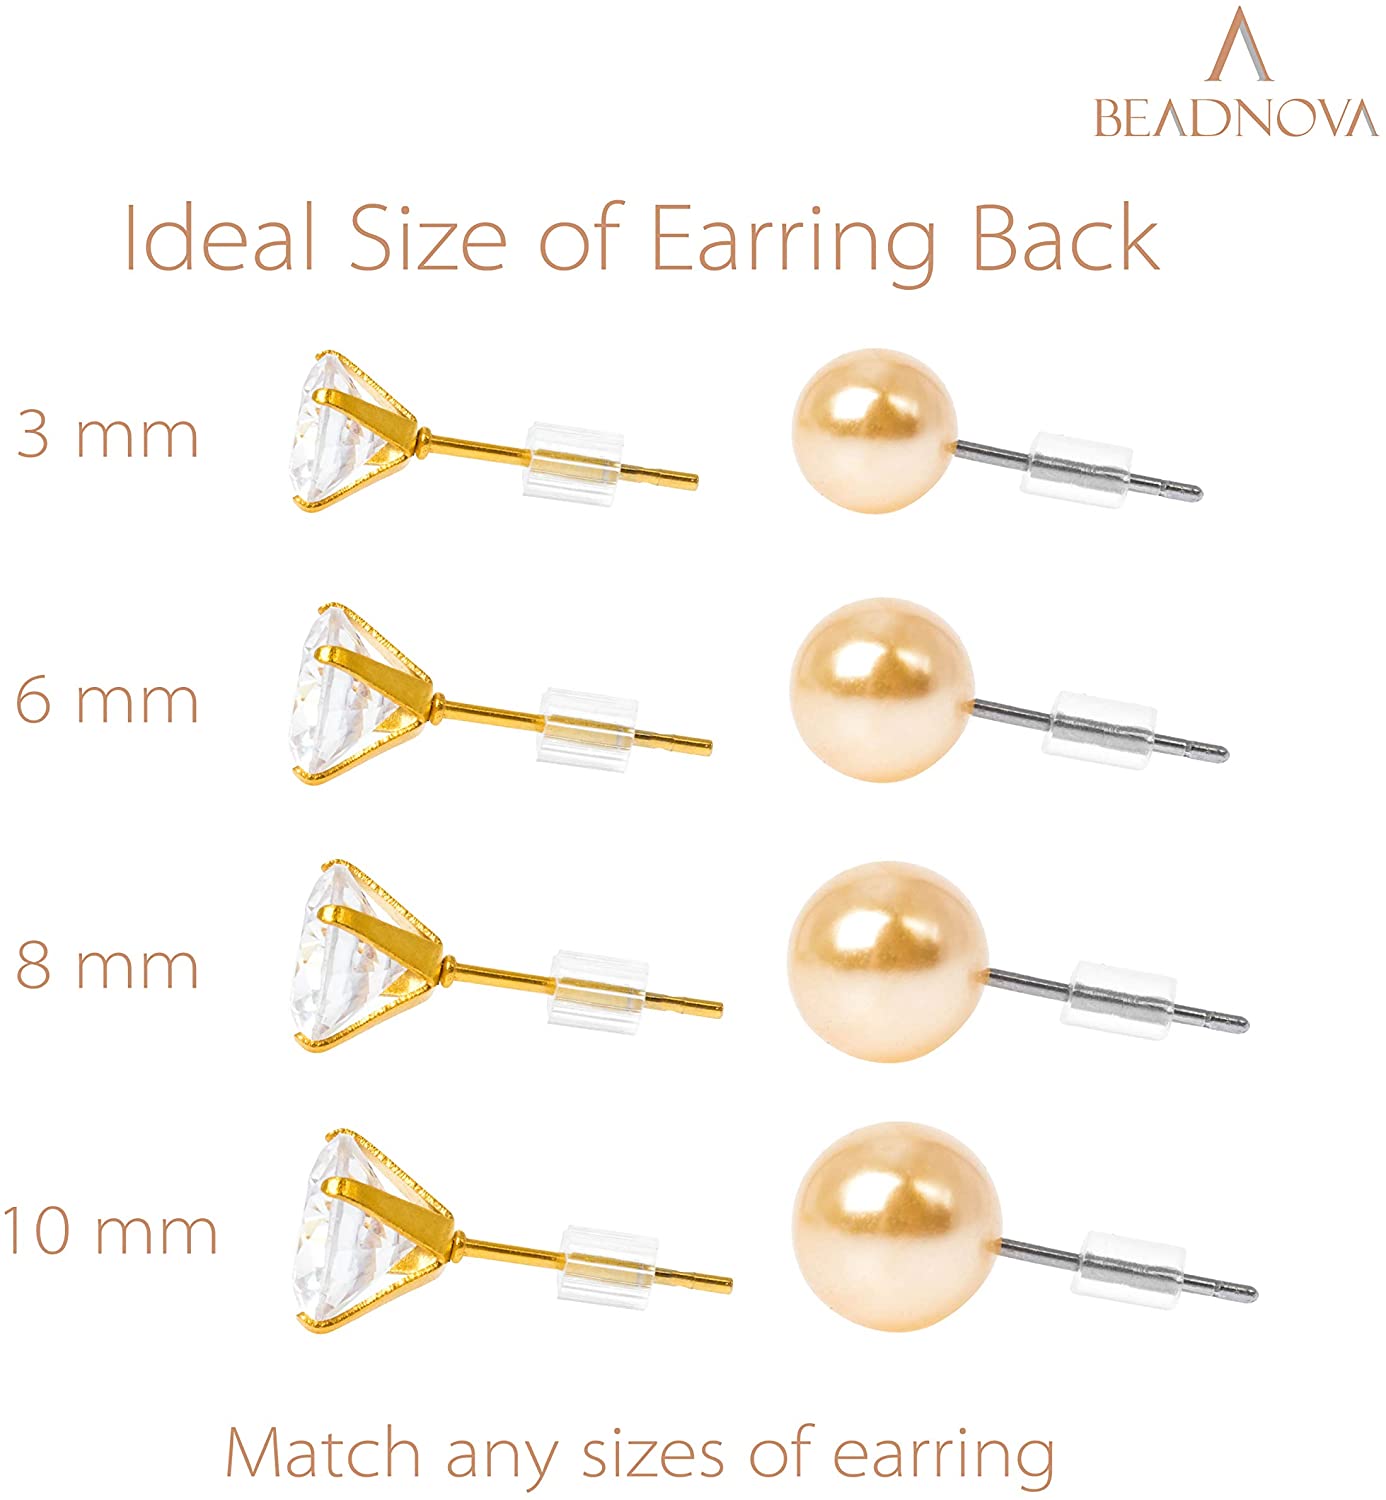 500pcs Clear Earring Backings, Earring Backs Bullet Clutch Stopper Replacements Hypoallergenic Secure Earring Backs for Studs Fish Hook Earrings